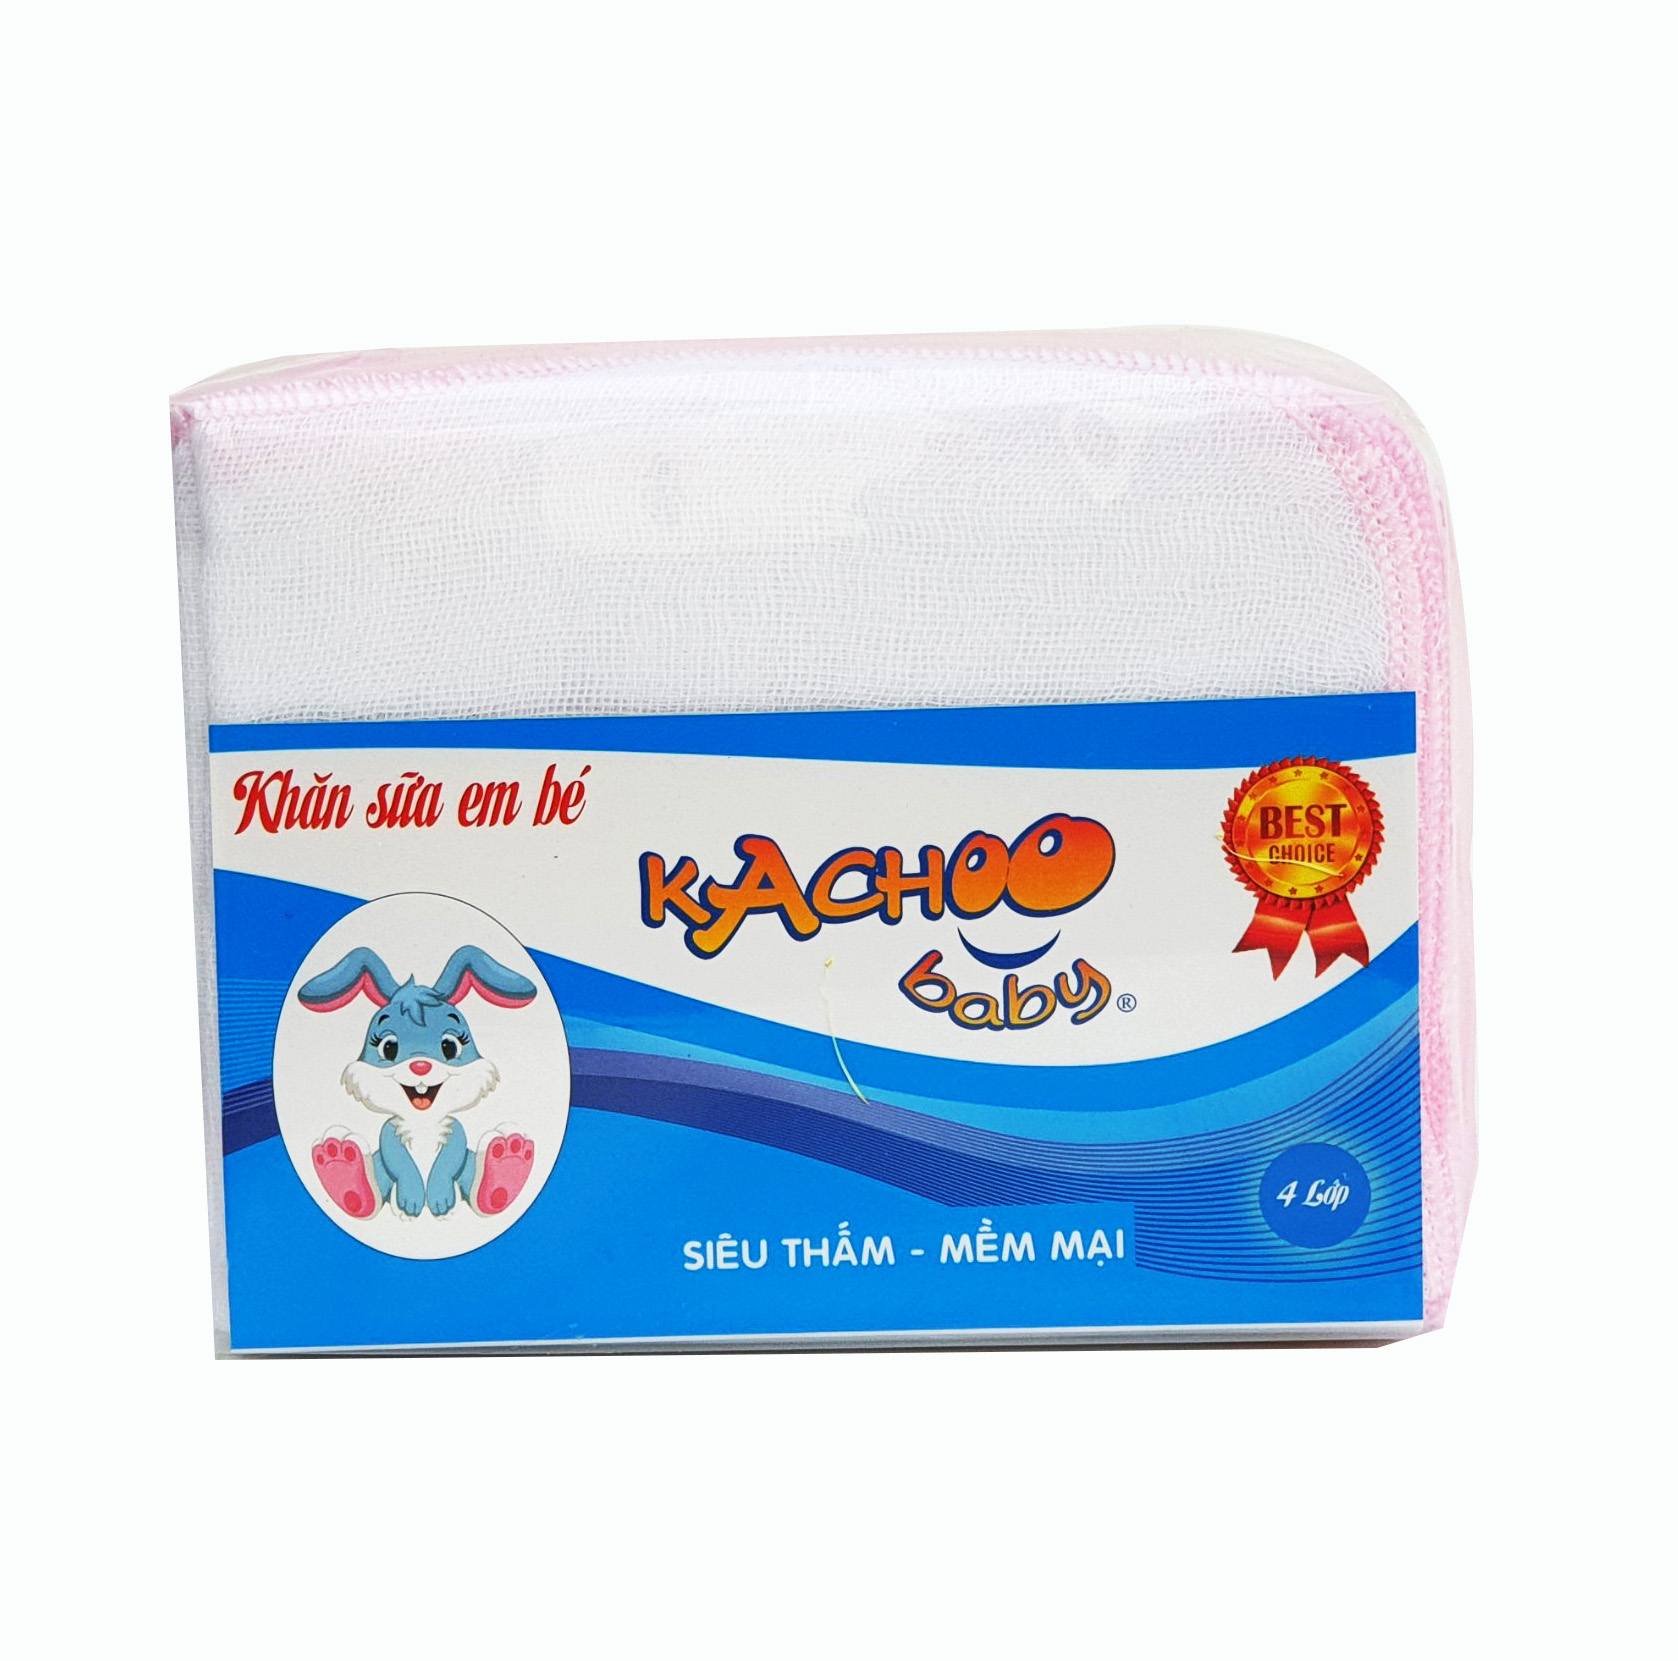 Khăn sữa 3 lớp KACHOOBABY (26x31cm)10 khăn để thay đổi, dùng để lau mặt, quàng cổ, thấm sữa, tắm bé